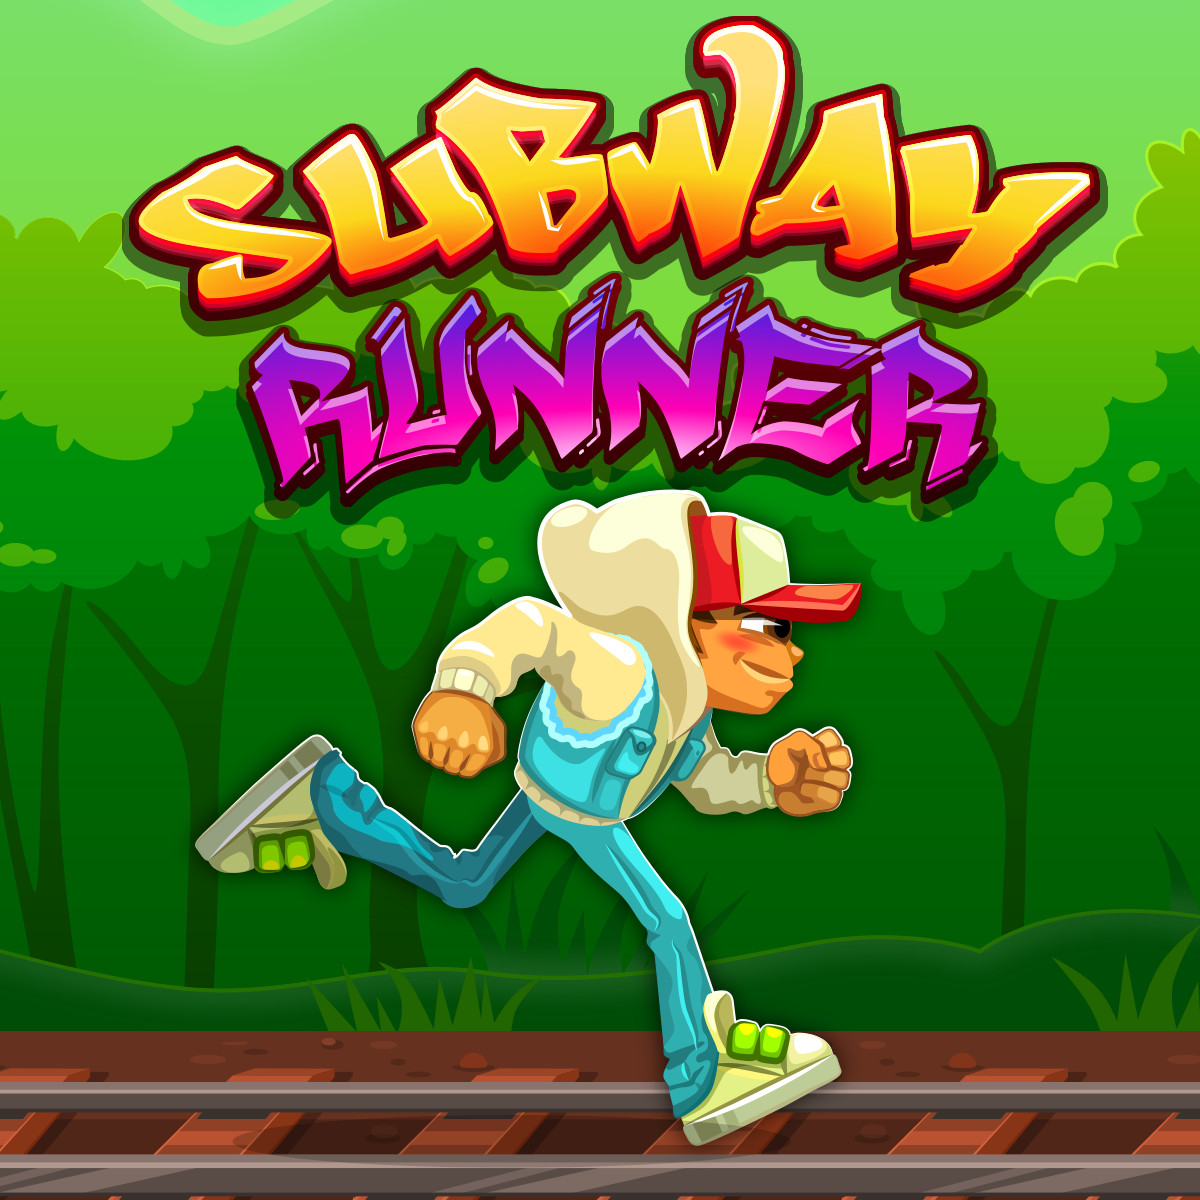 <b>Subway Runner</b>